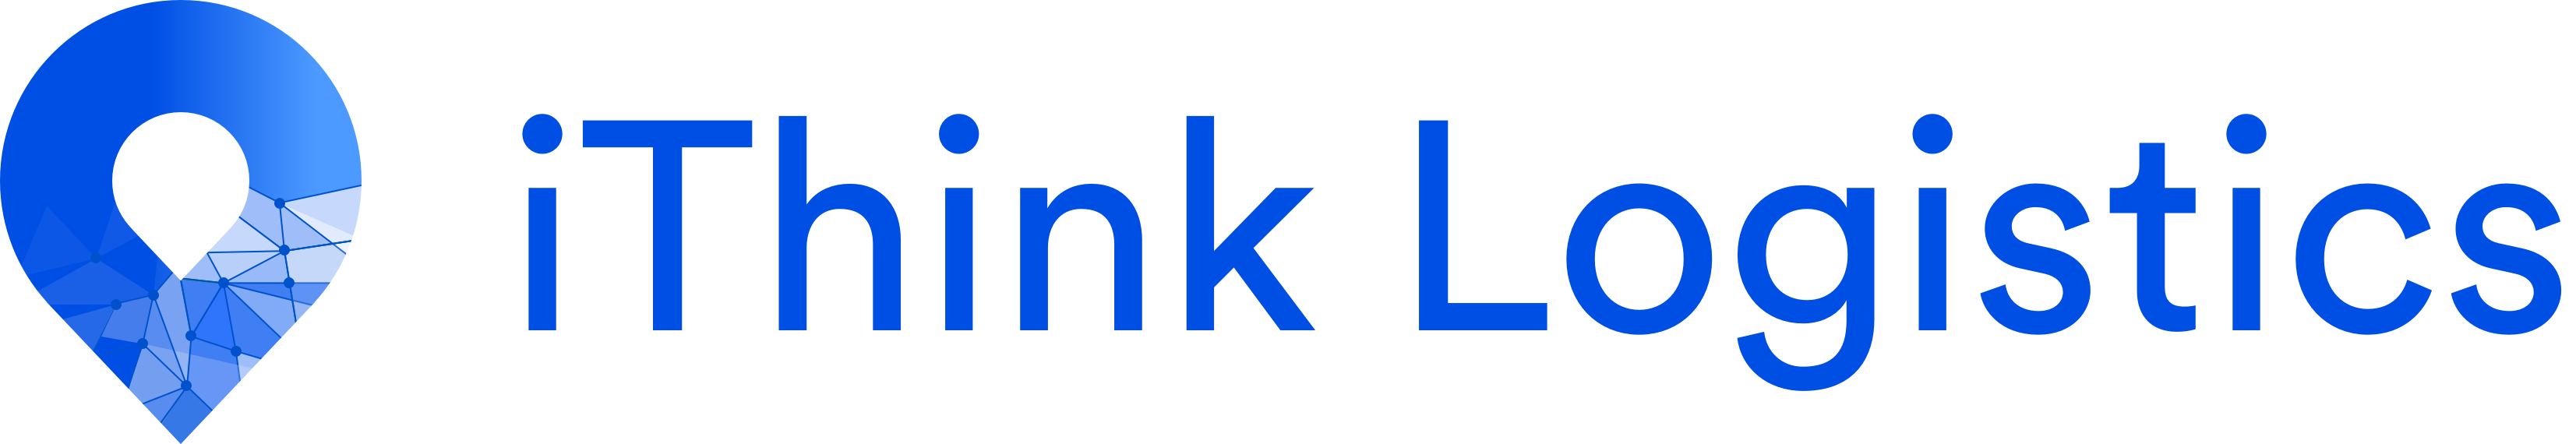 Logo ithink logistics